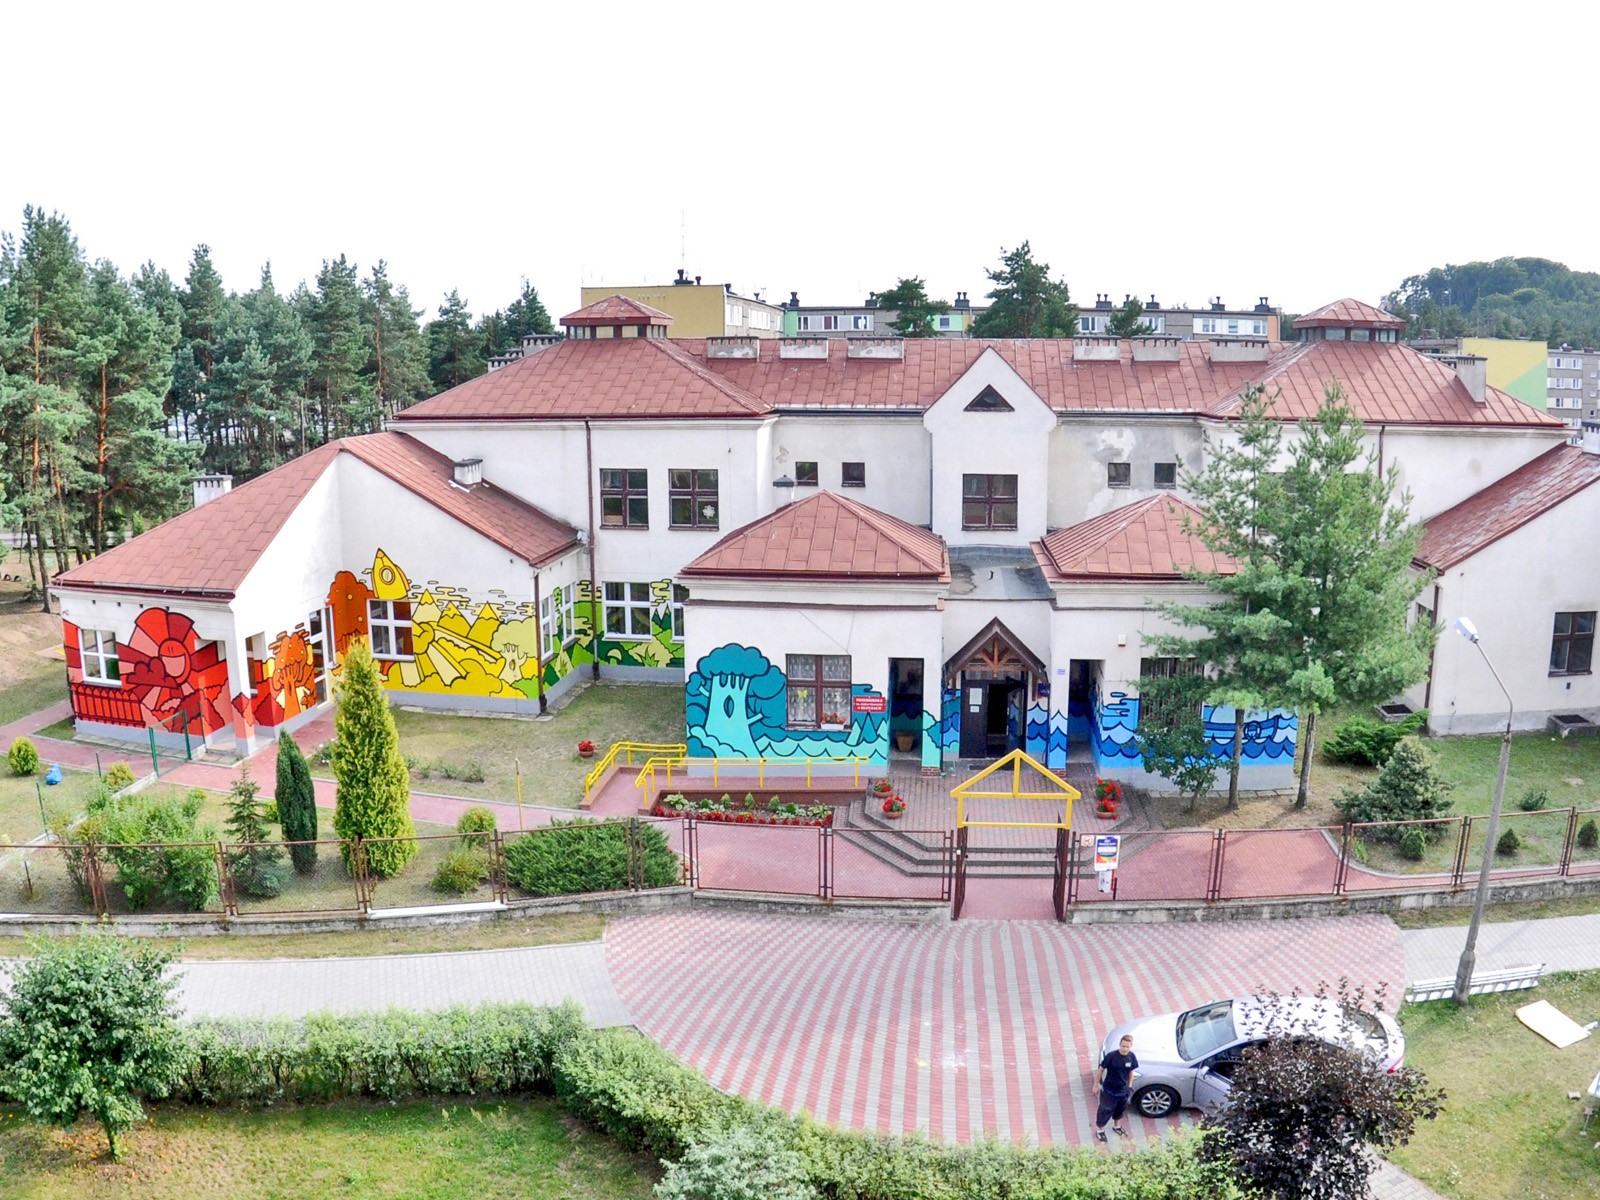 Dulux Lets colour - Event z malowaniem - CSR- Przedszkole Klucze | Ogólnopolska kampania muralowa | Portfolio